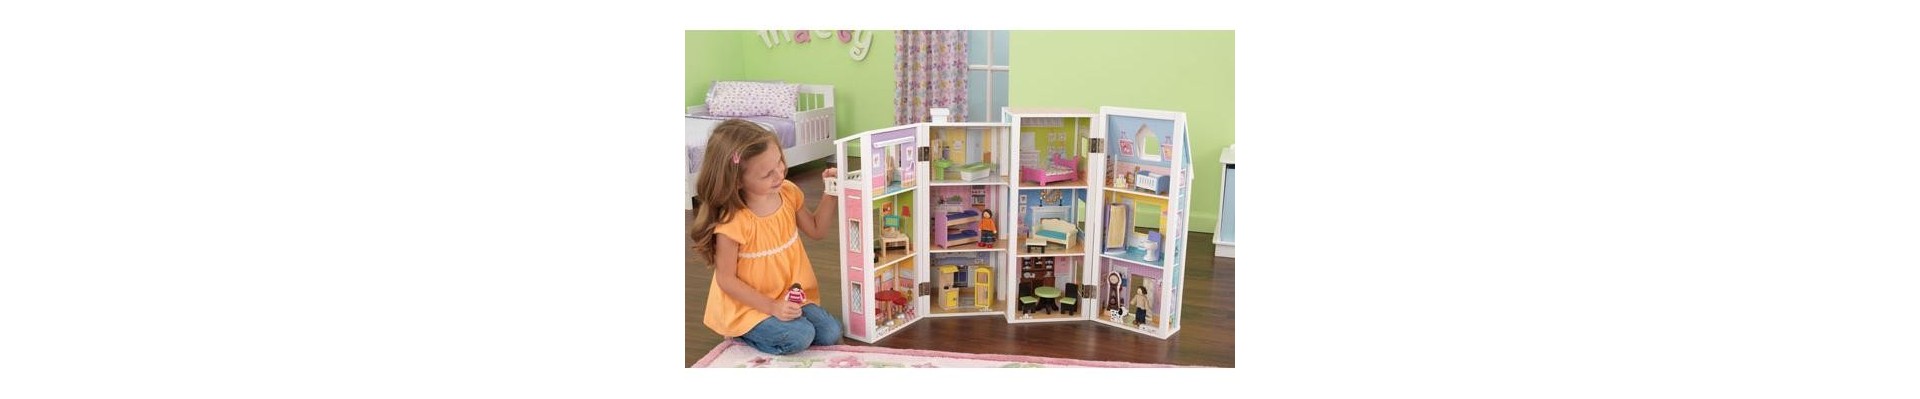 Zabawki dla dziewczynek w różnym wieku: bezpieczne | Trendy Smyk